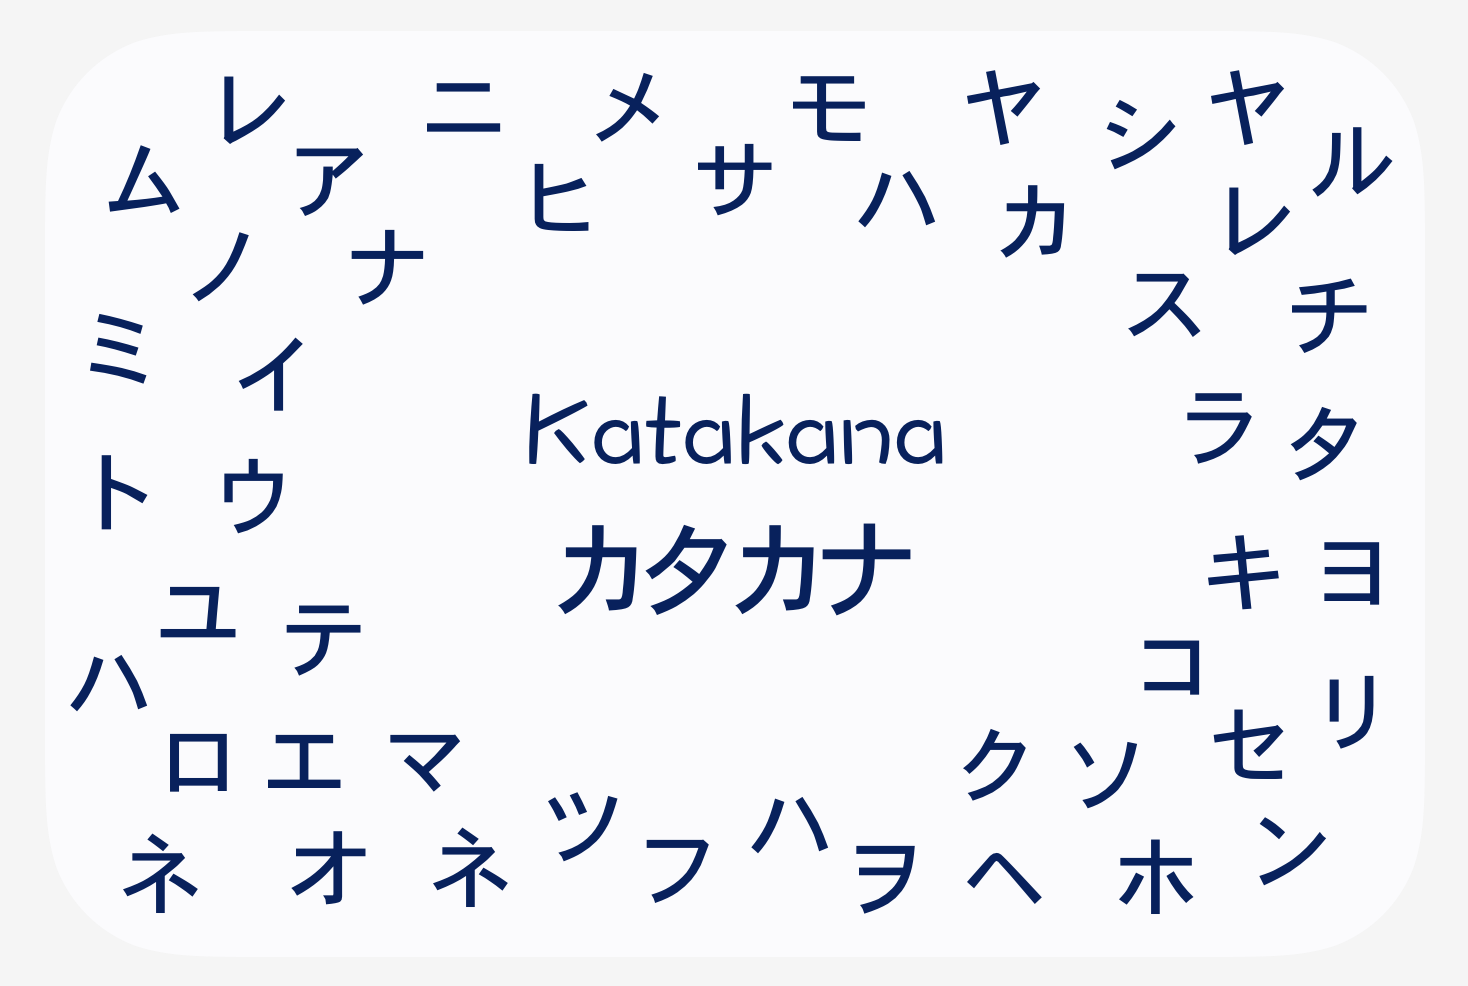 Нихонго. Алфавит японского языка катакана. Катакана иероглифы. Японские иероглифы катакана. Надписи на катакане.